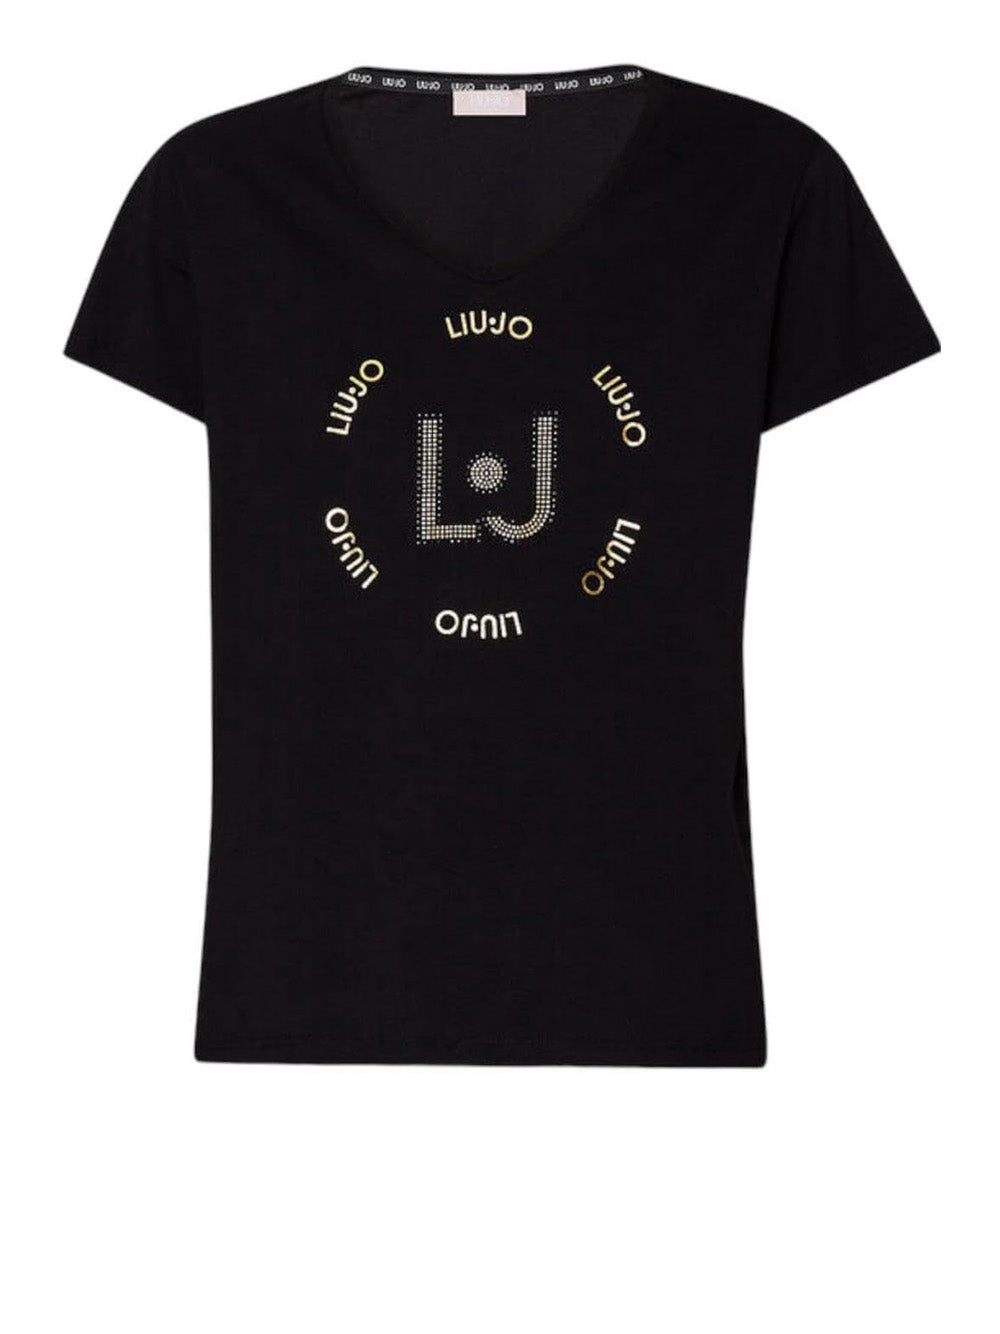 LIU.JO T-shirt Donna - Nero modello TA4137J6040